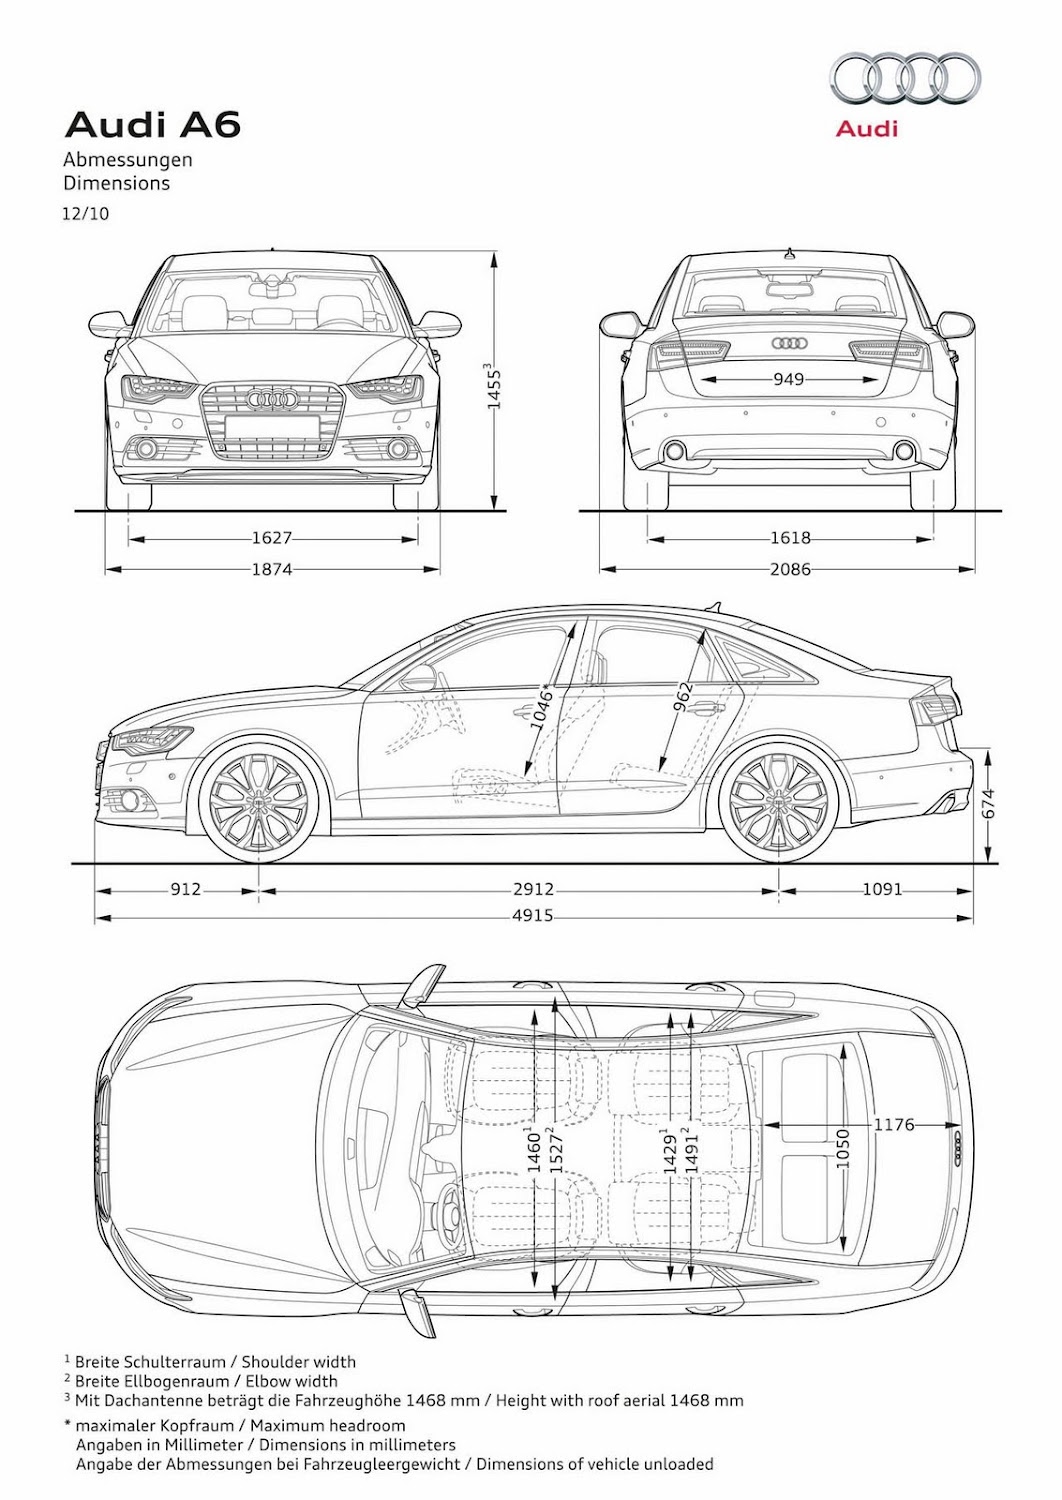 2012 Audi A6 Car Dimension Review